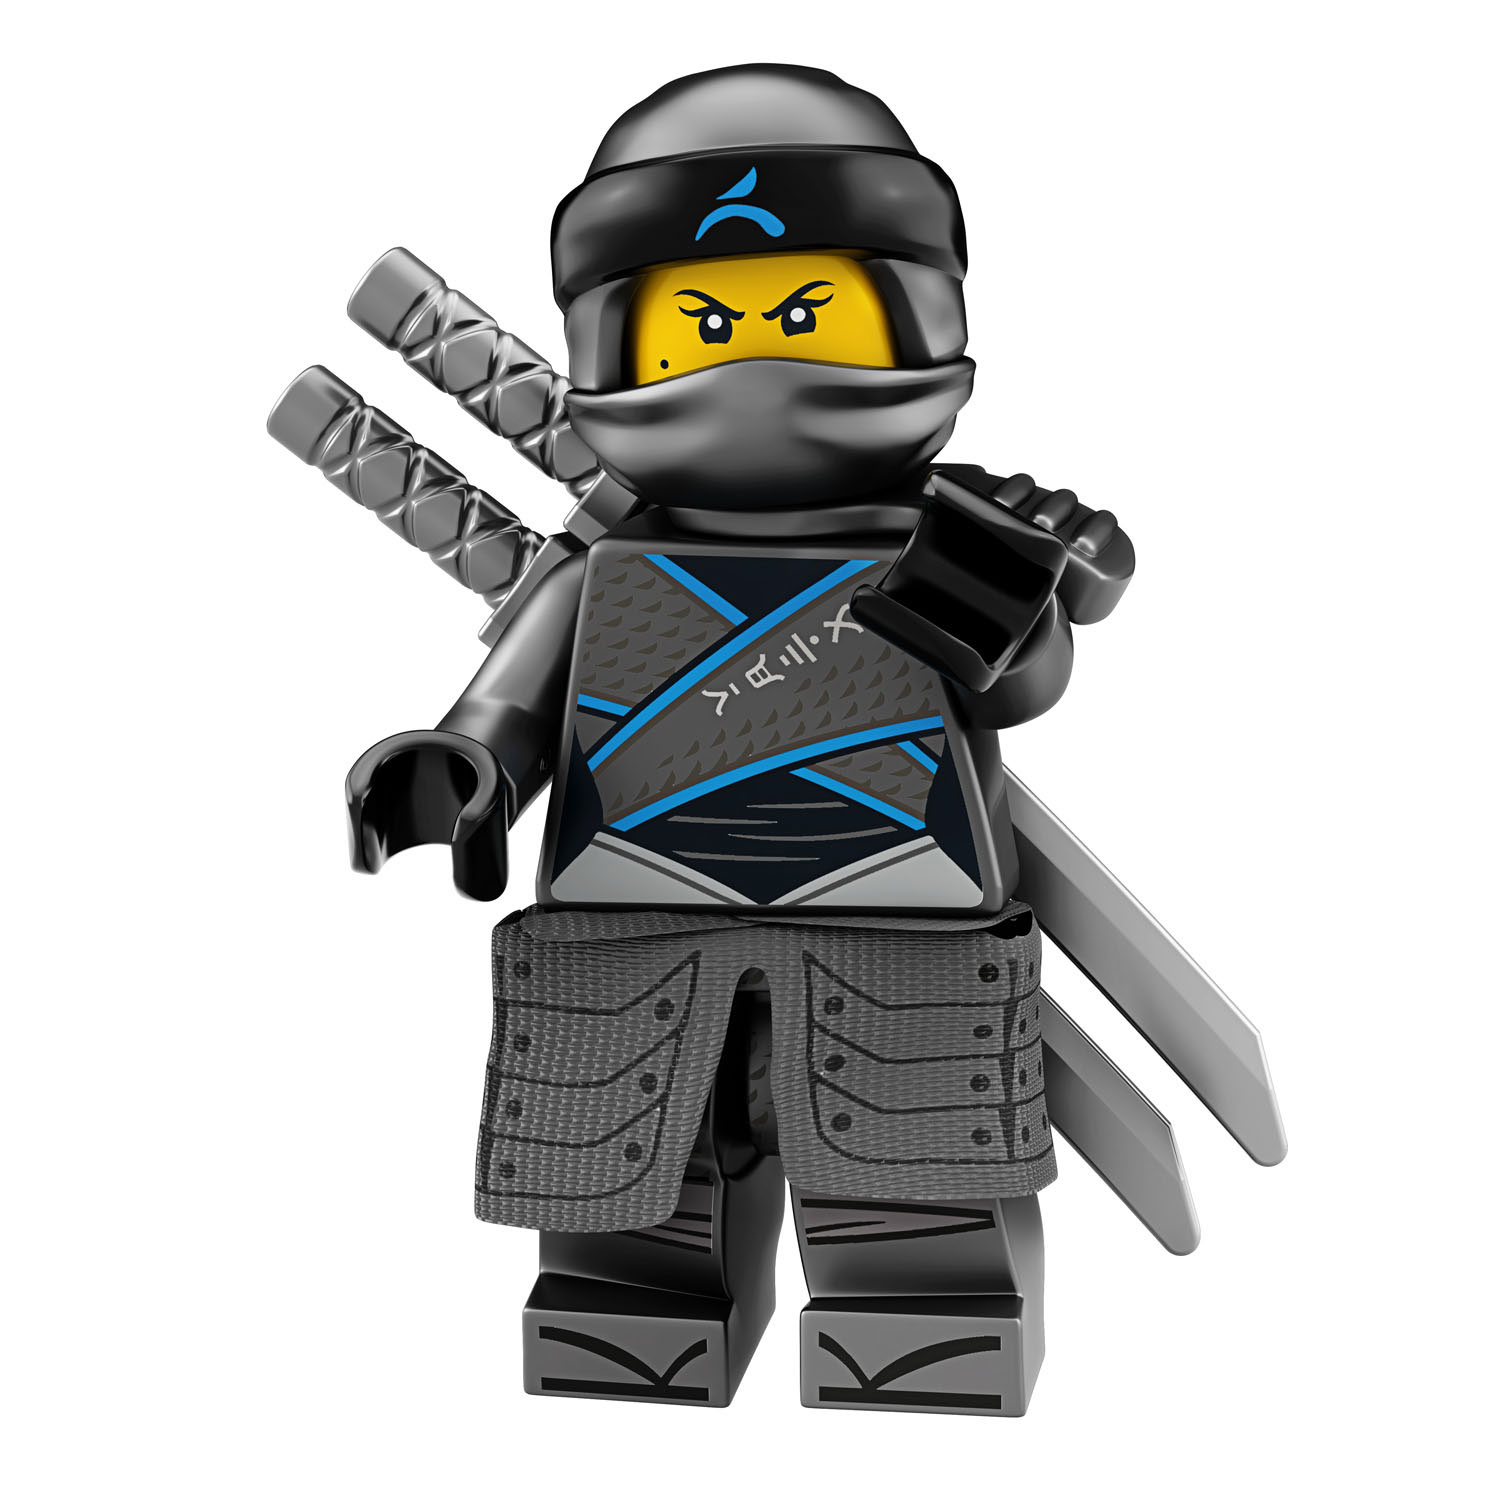 LEGO Ninjago 70641 Ninja Nachtracer